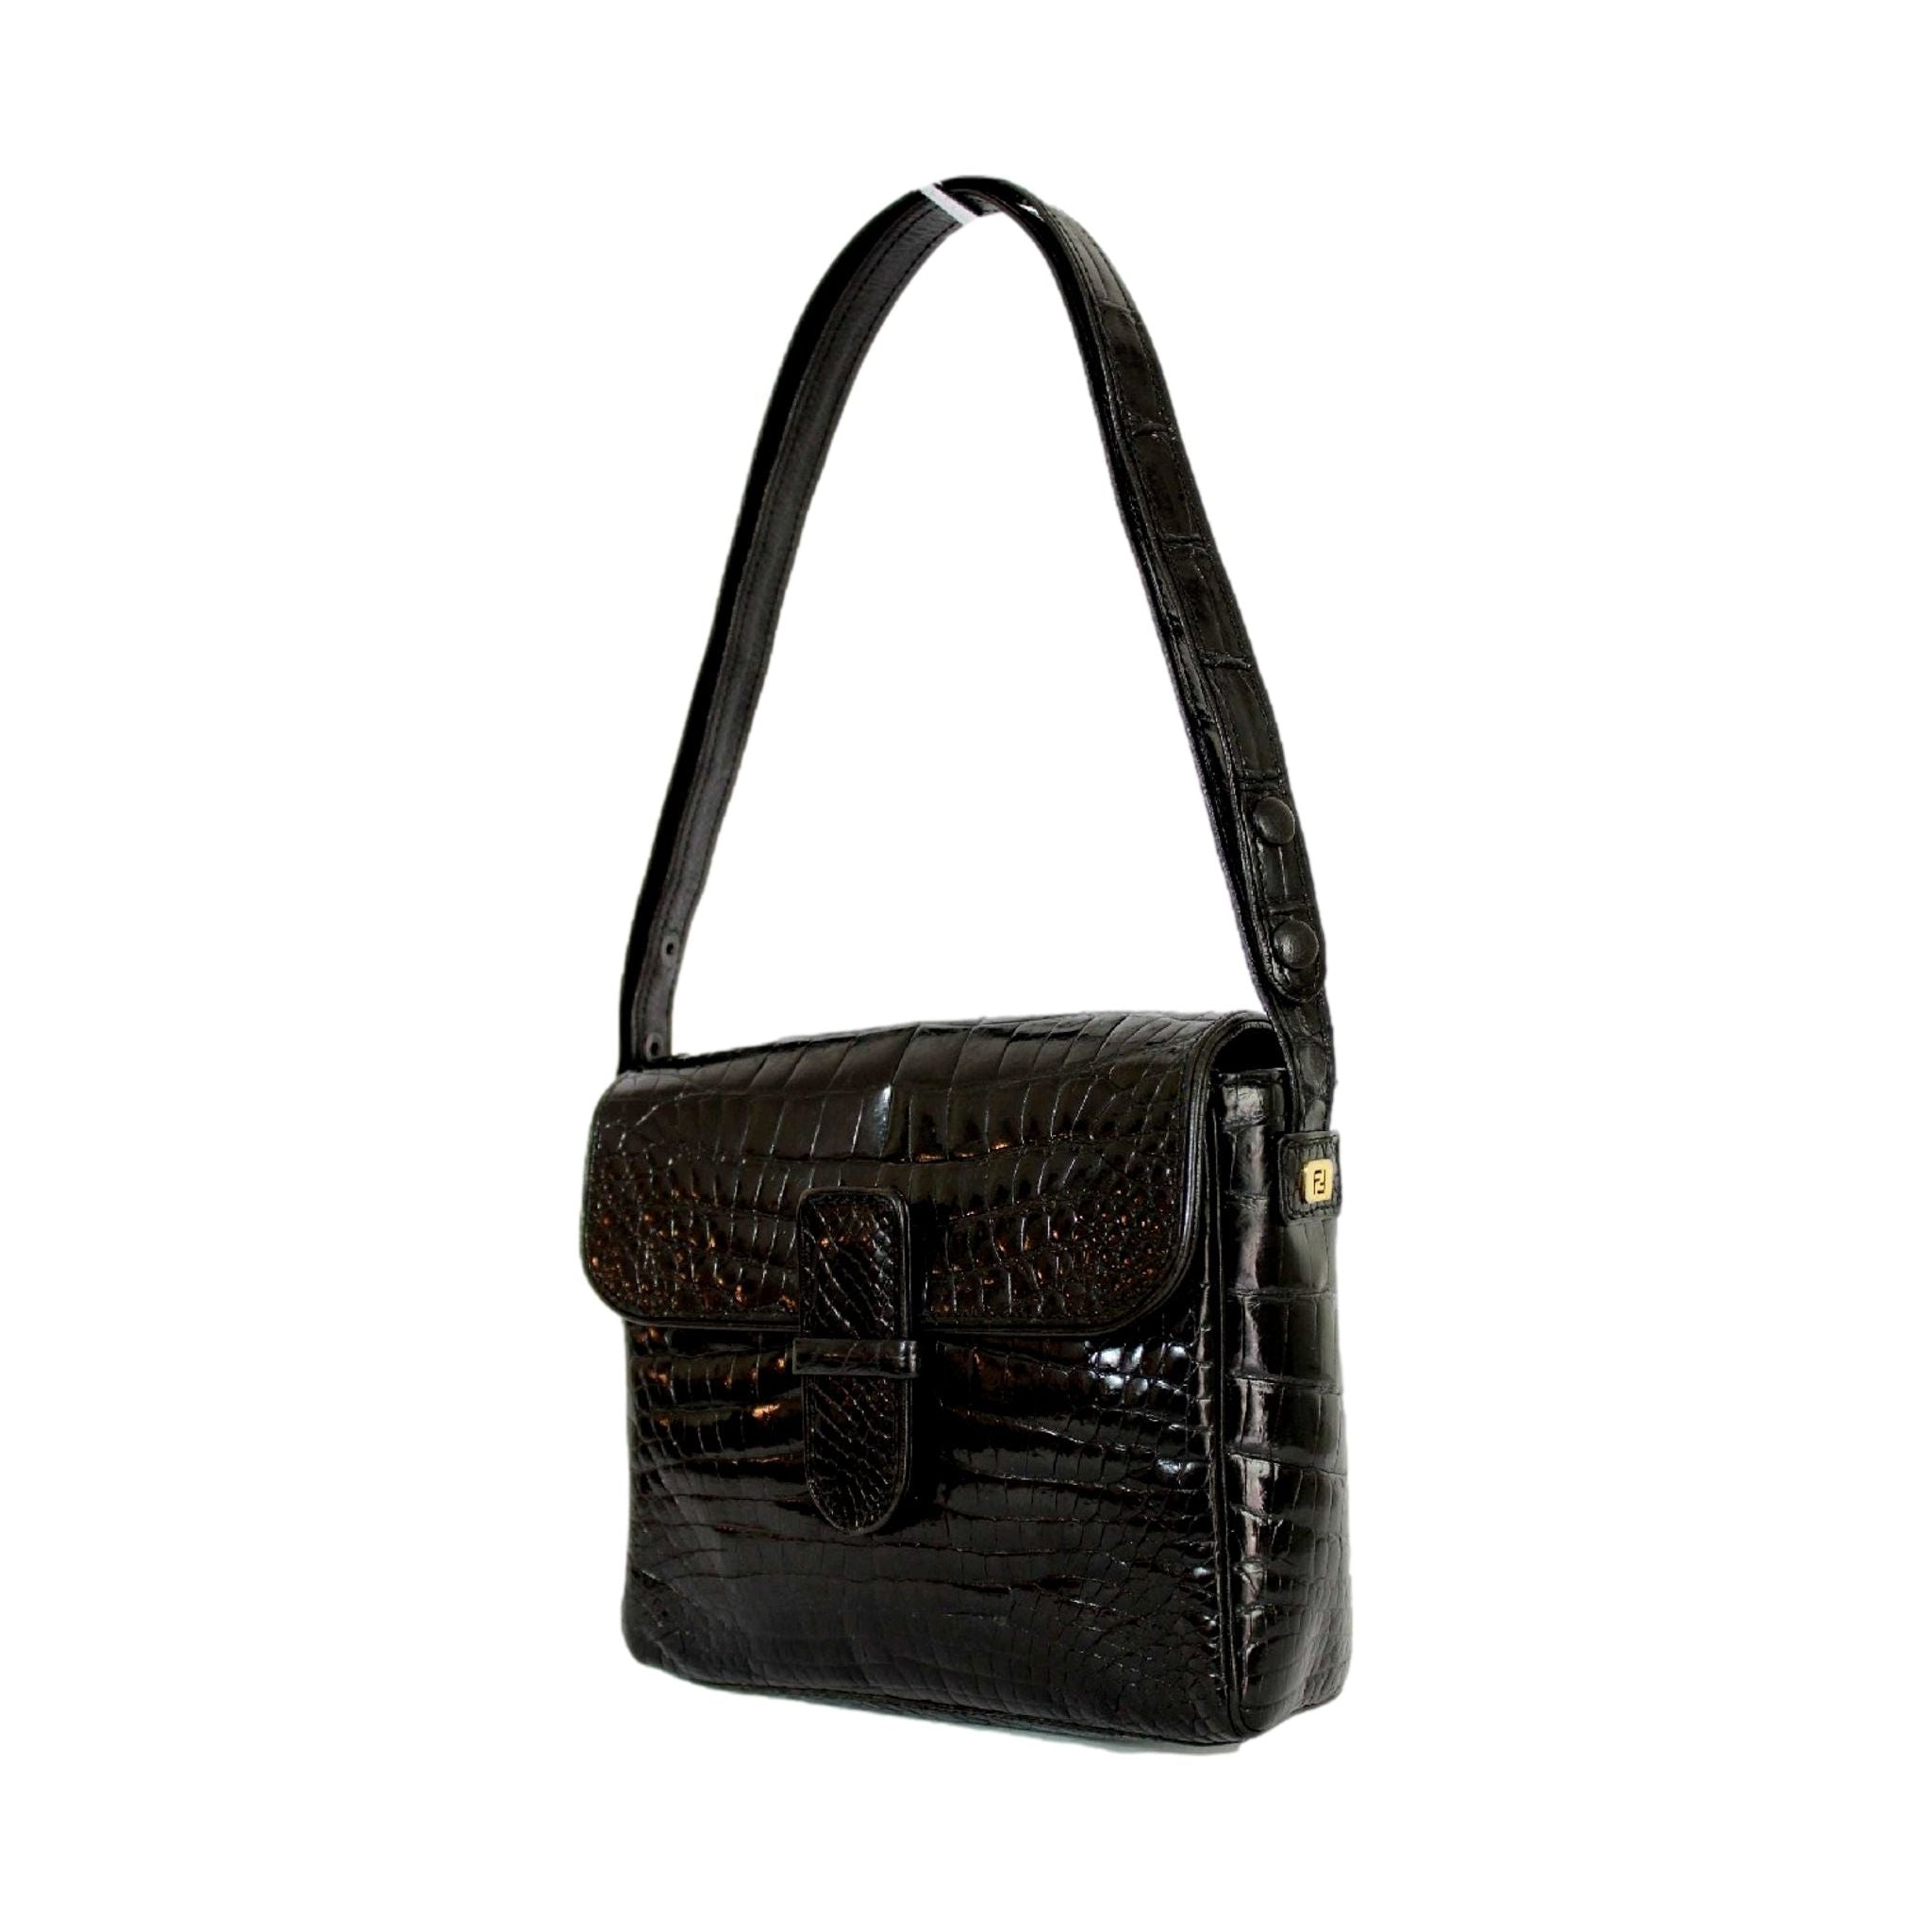 VTG Fendi 80s Shoulder Bag Woven Leather Black Made in Italy Adjustable  Strap